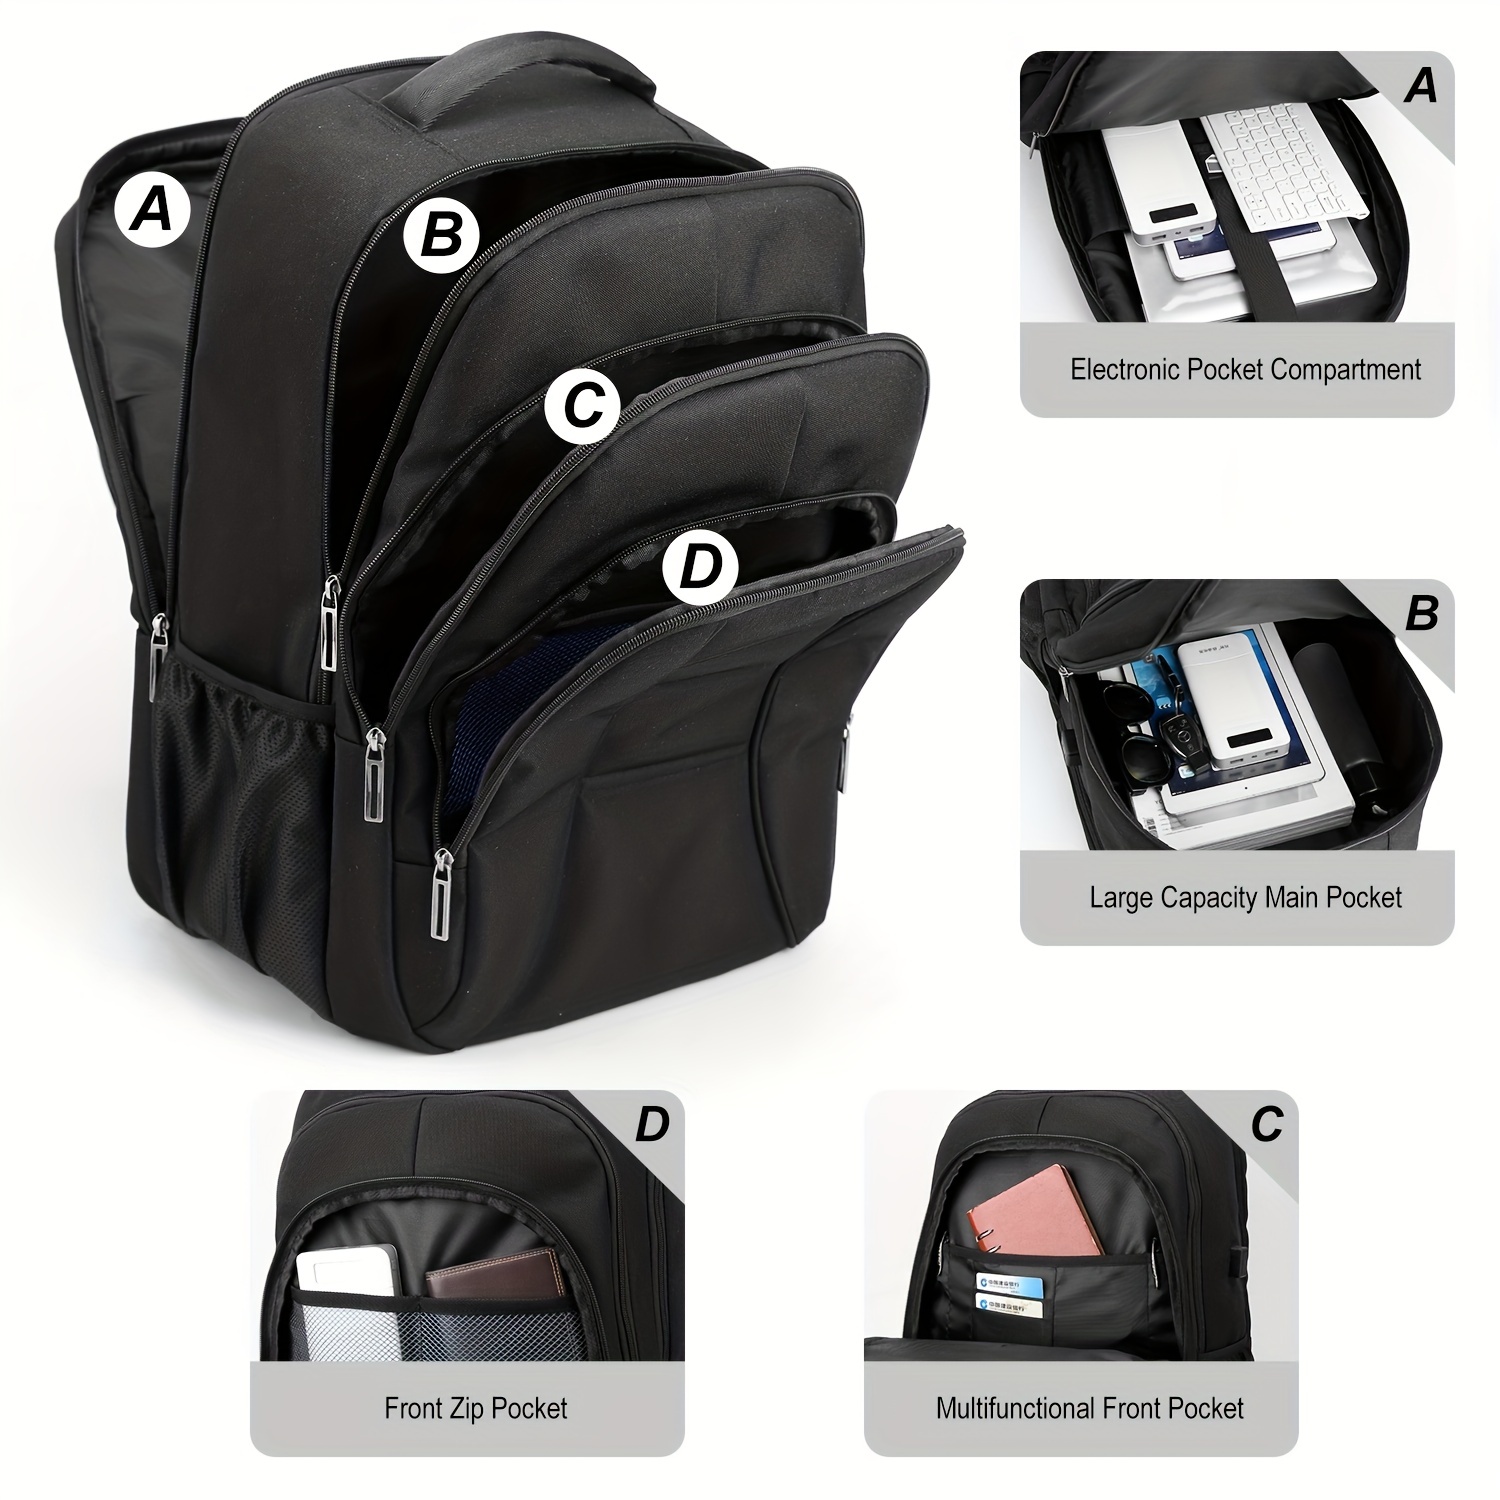 Mochila escolar, mochila grande para laptop de viaje con puerto de carga  USB, bolsa de trabajo duradera para portátiles de 17 pulgadas para mujeres  y